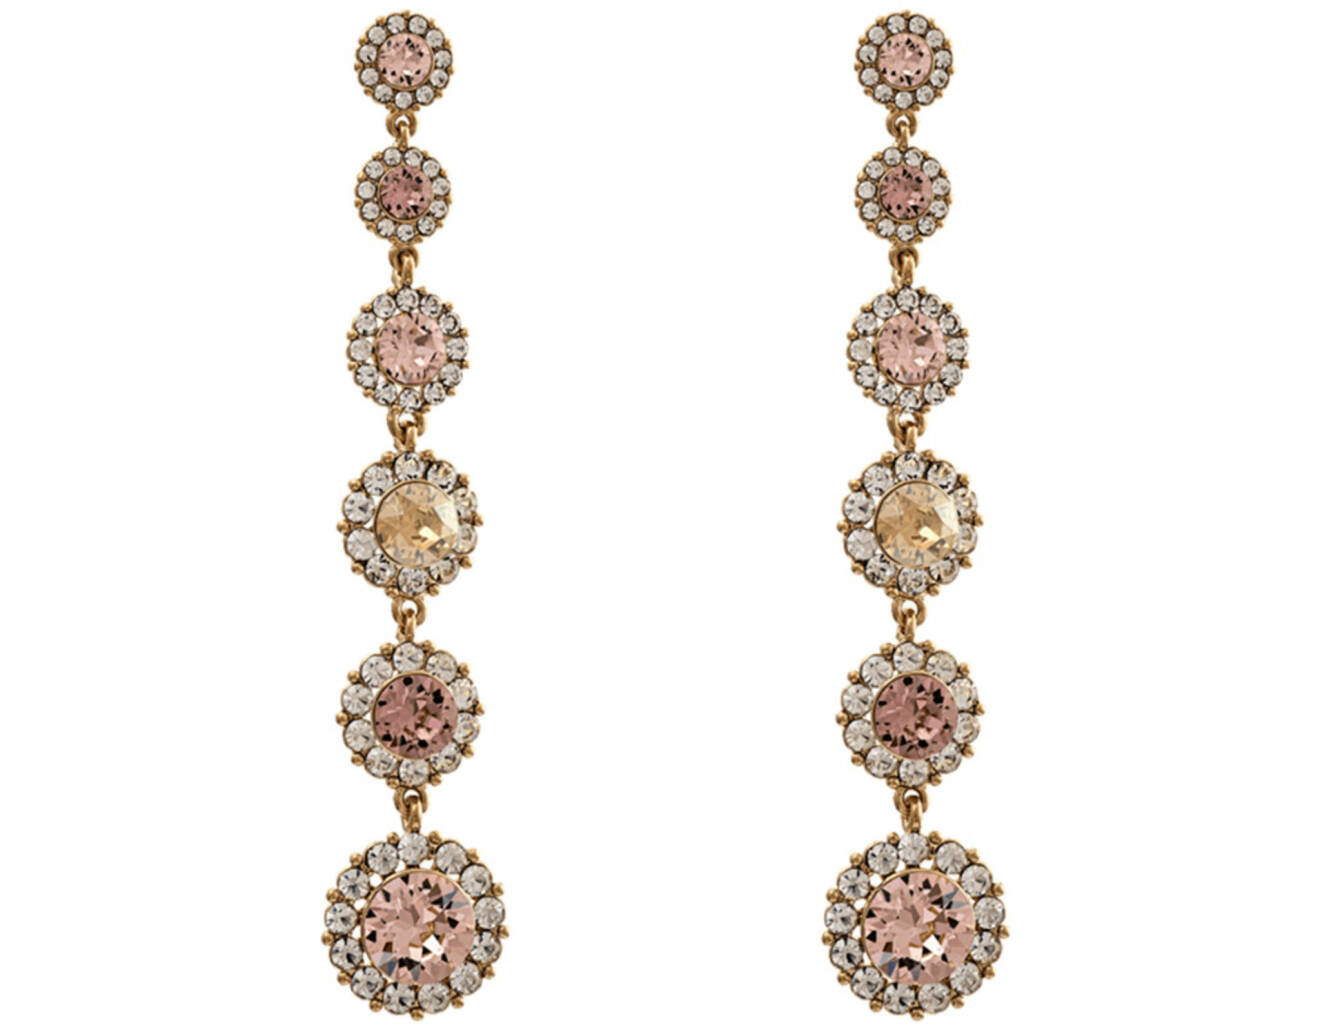 Långa örhängen med Swarovski-kristaller i rosa och beige, från Lily and Rose